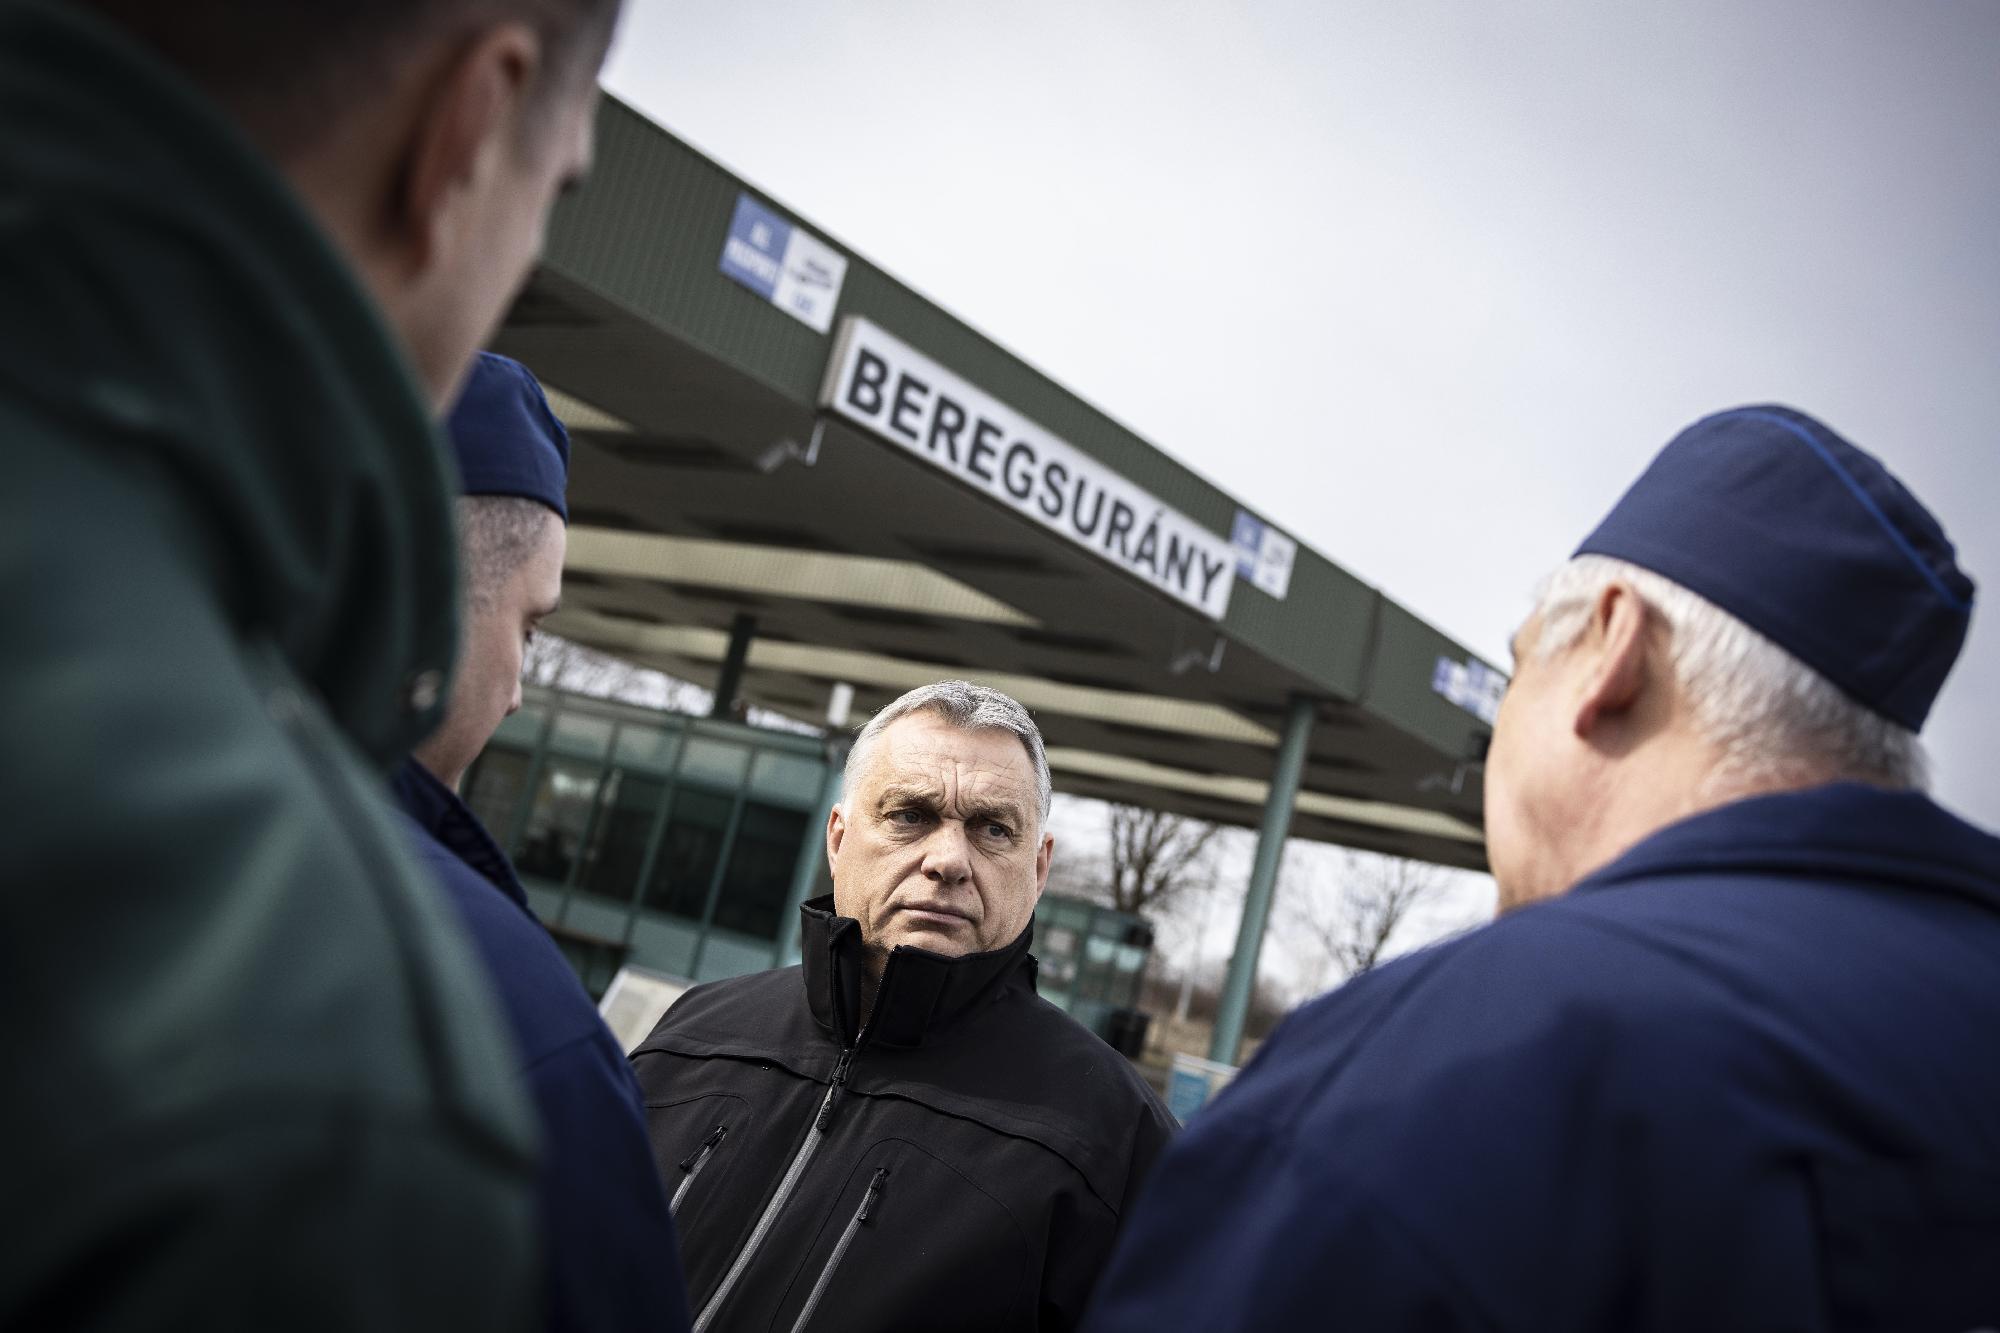 Orosz hadművelet - Orbán Viktor a beregsurányi határállomá